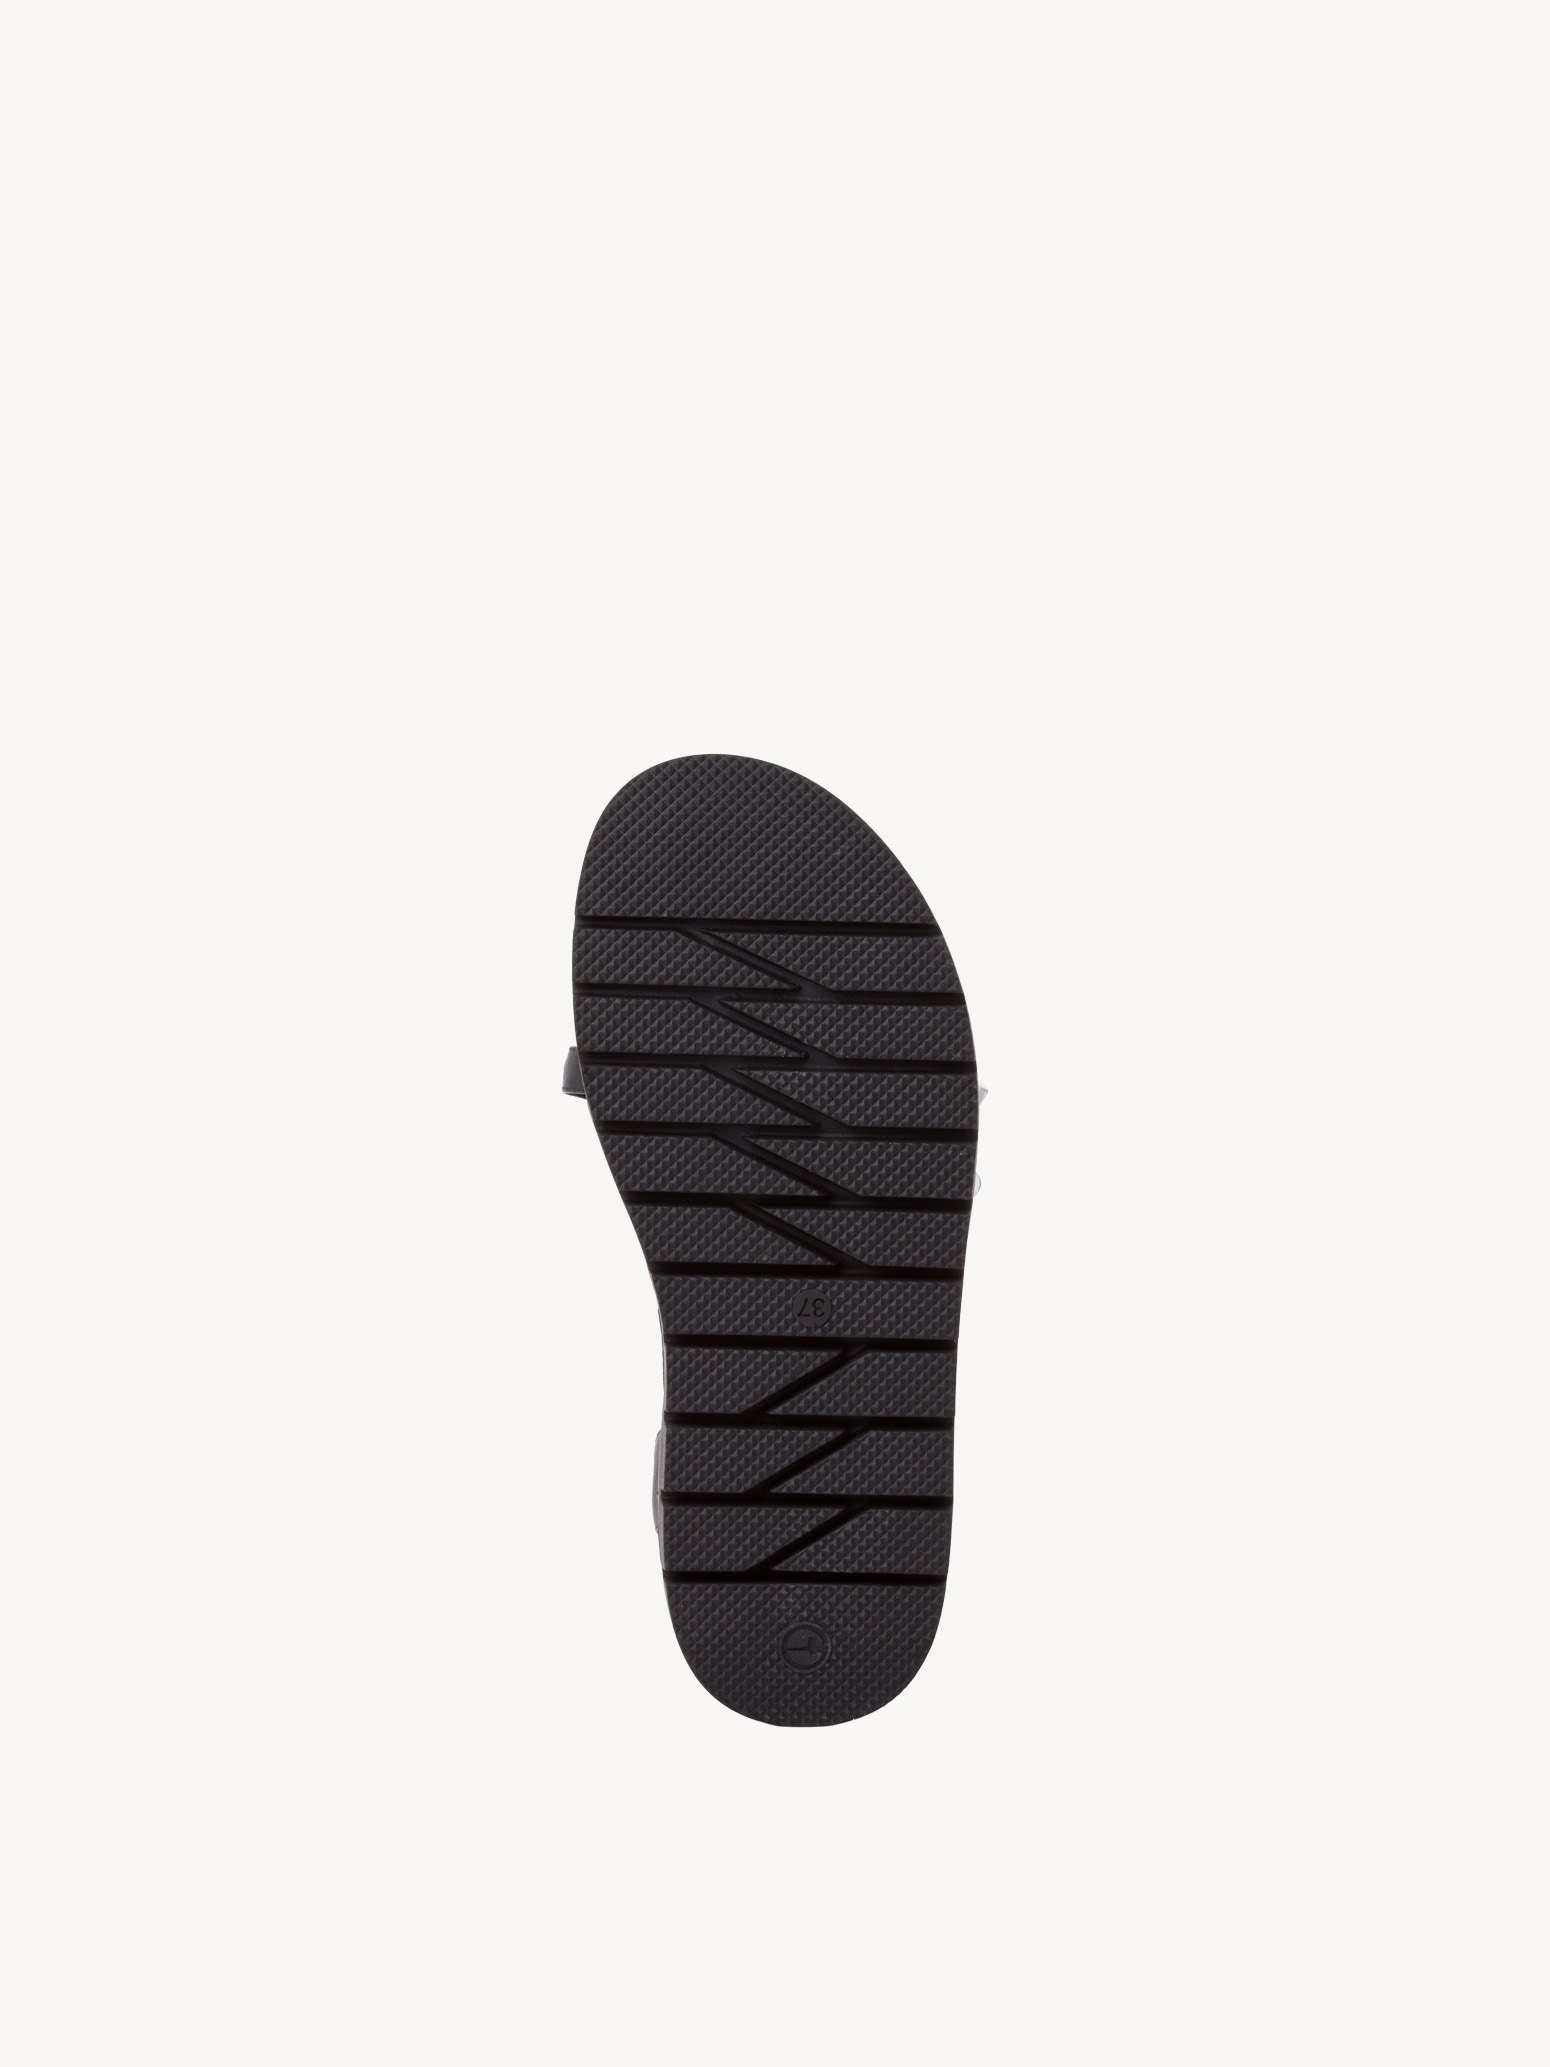 Leather Sandal - black, BLACK, hi-res